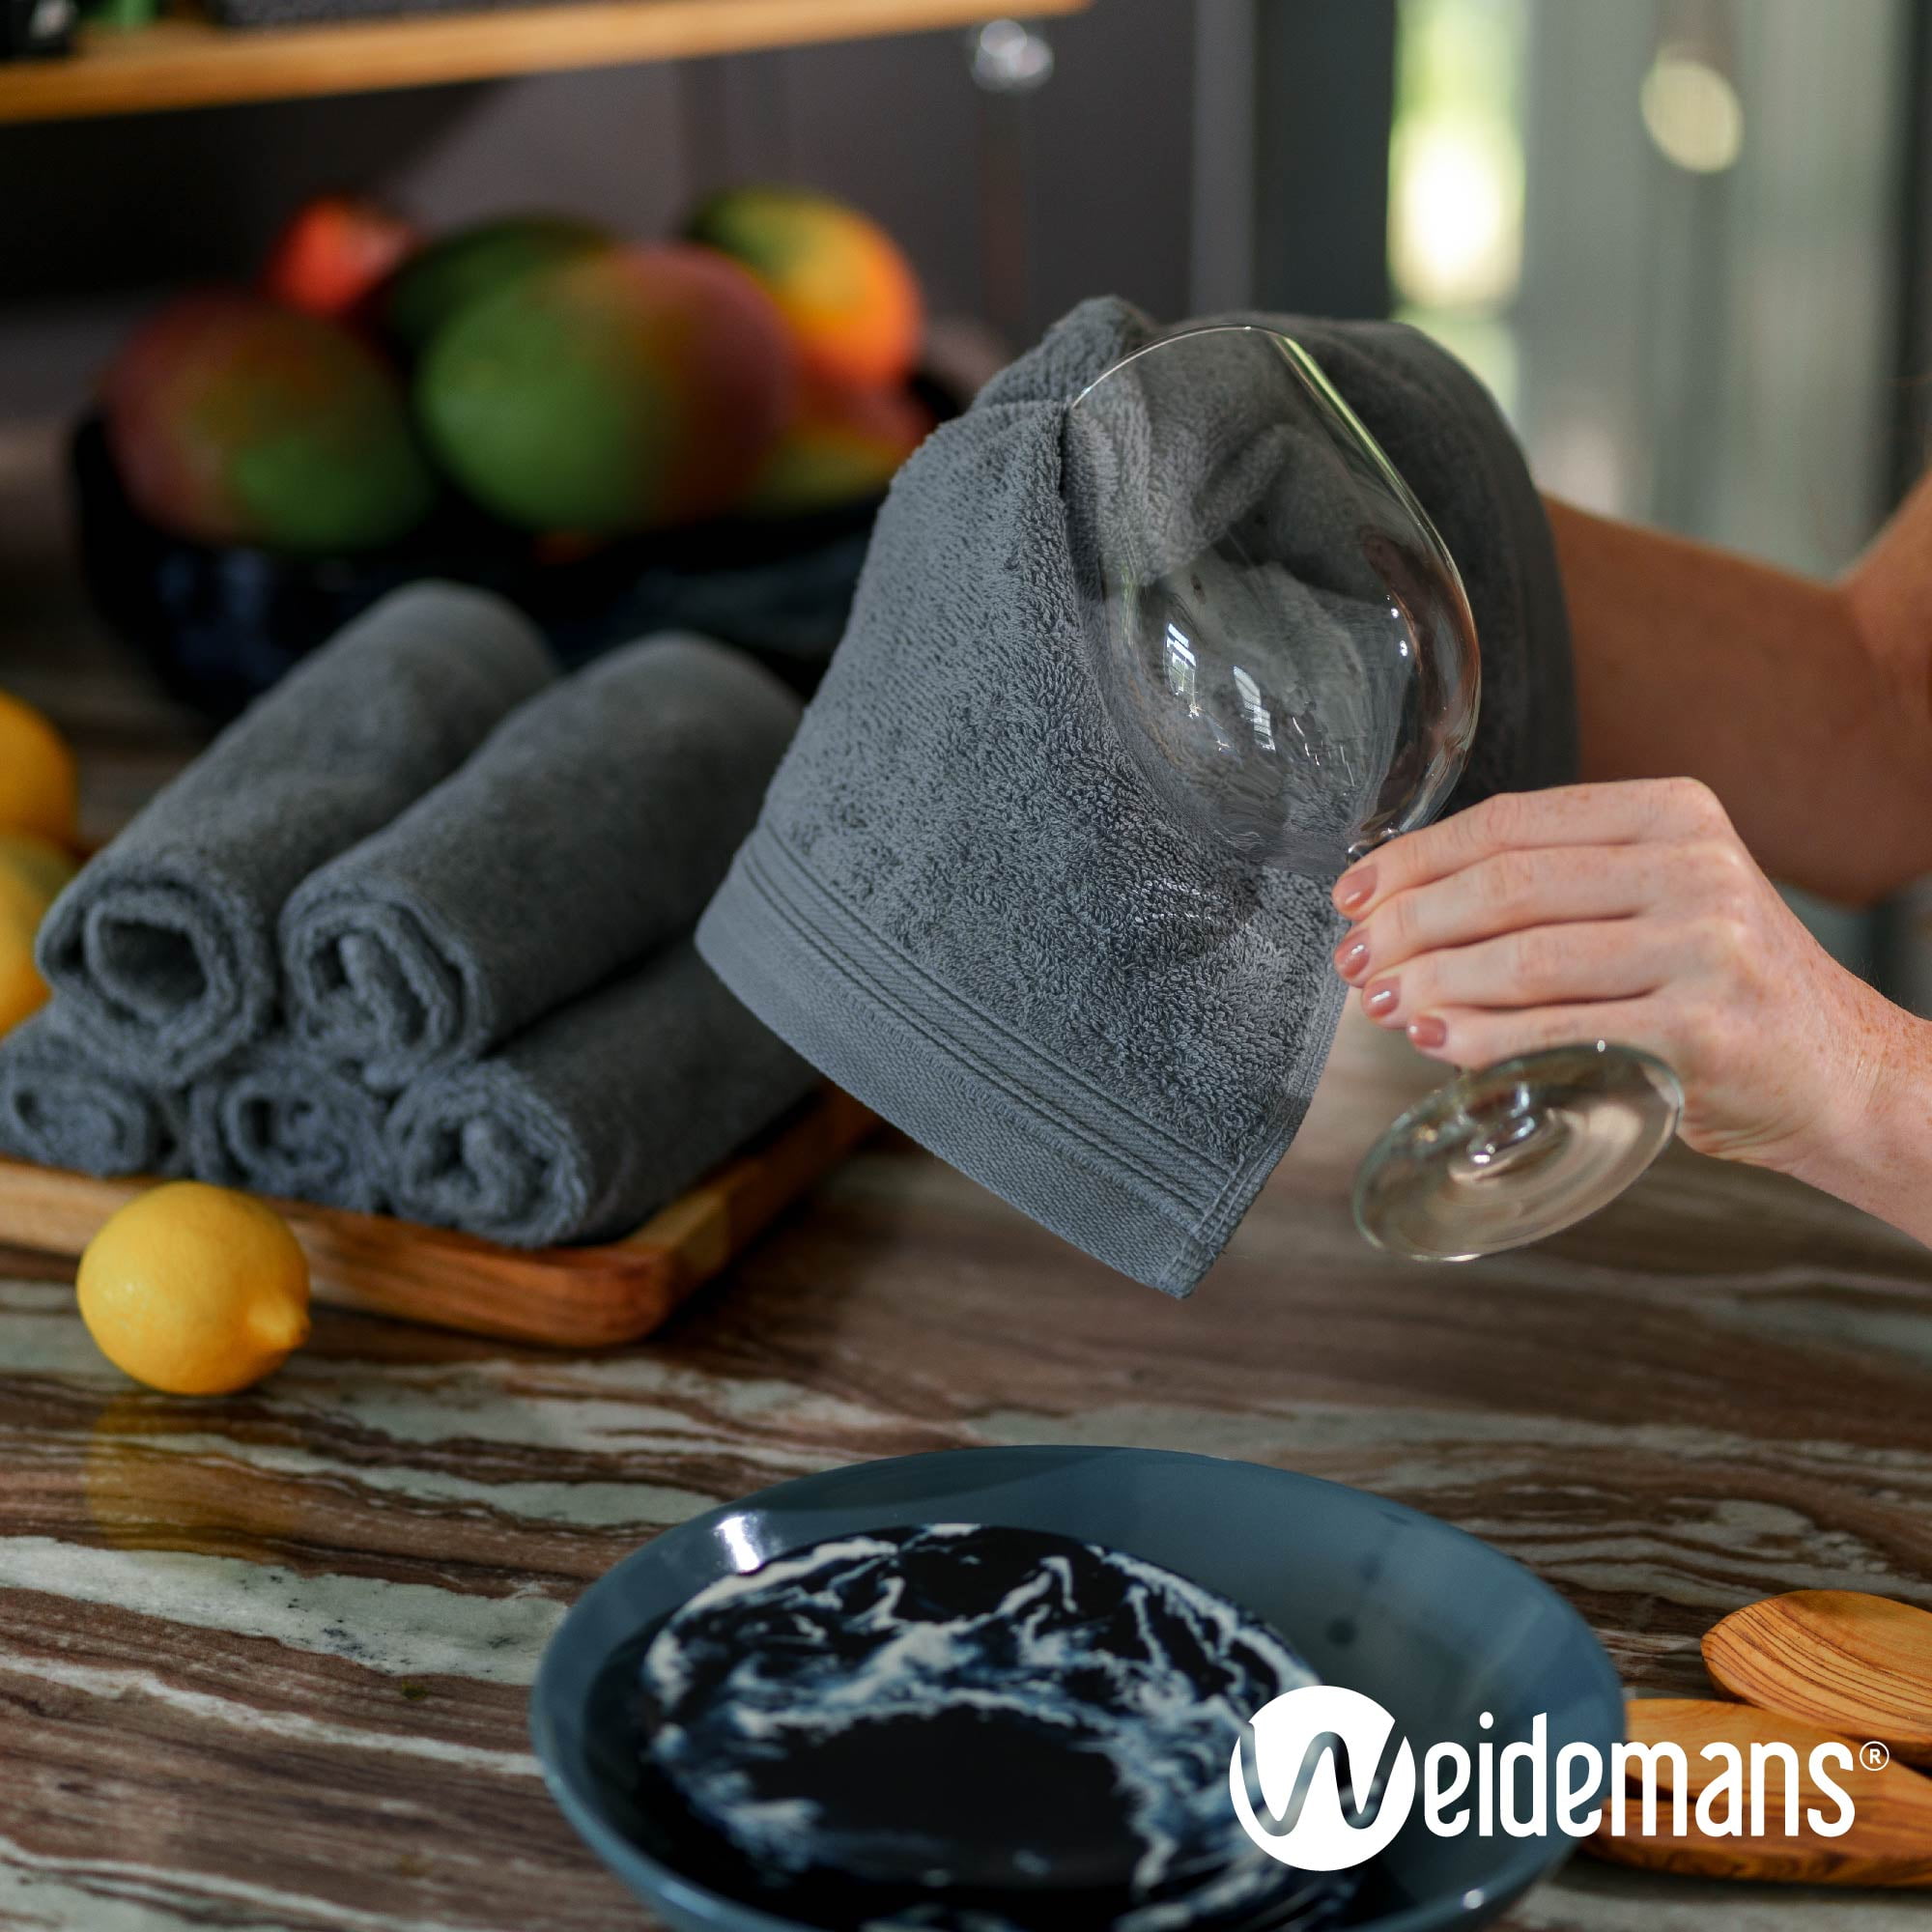 Weidemans Premium 12 Pieces Towel Set Including 12 Exclusive Washcloths Towels|Fingertip Towels 13 x 13 - Color: Plum 100% Cotton |Machine Washable